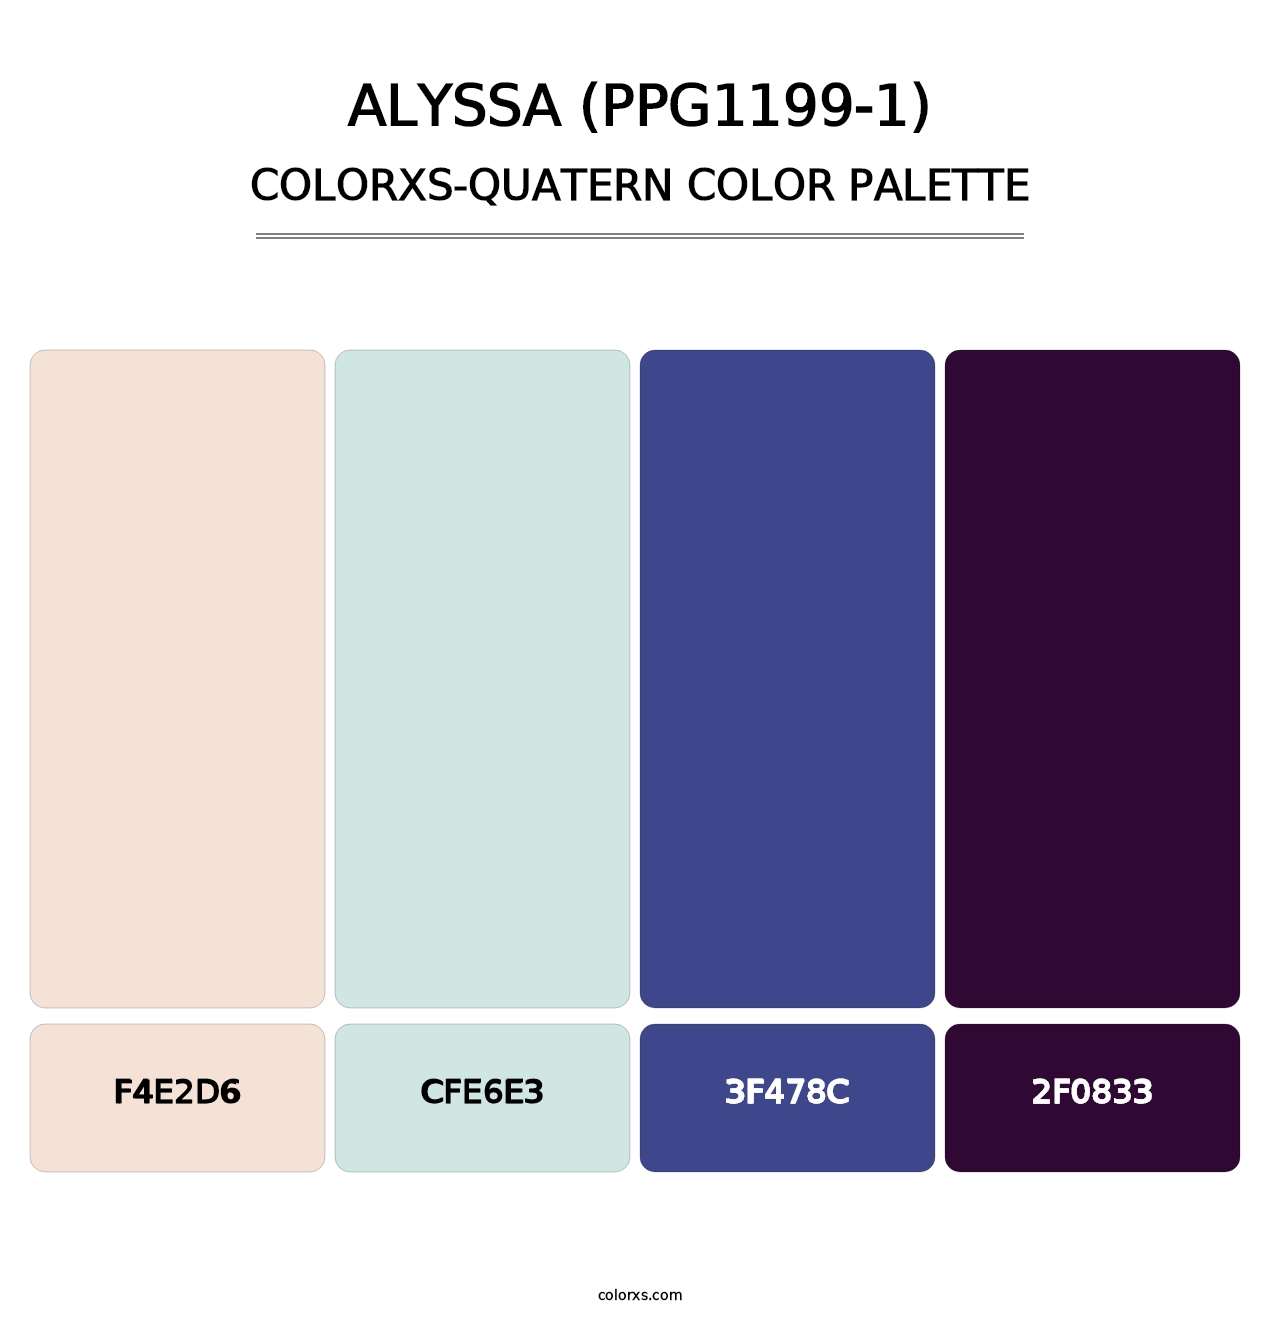 Alyssa (PPG1199-1) - Colorxs Quatern Palette